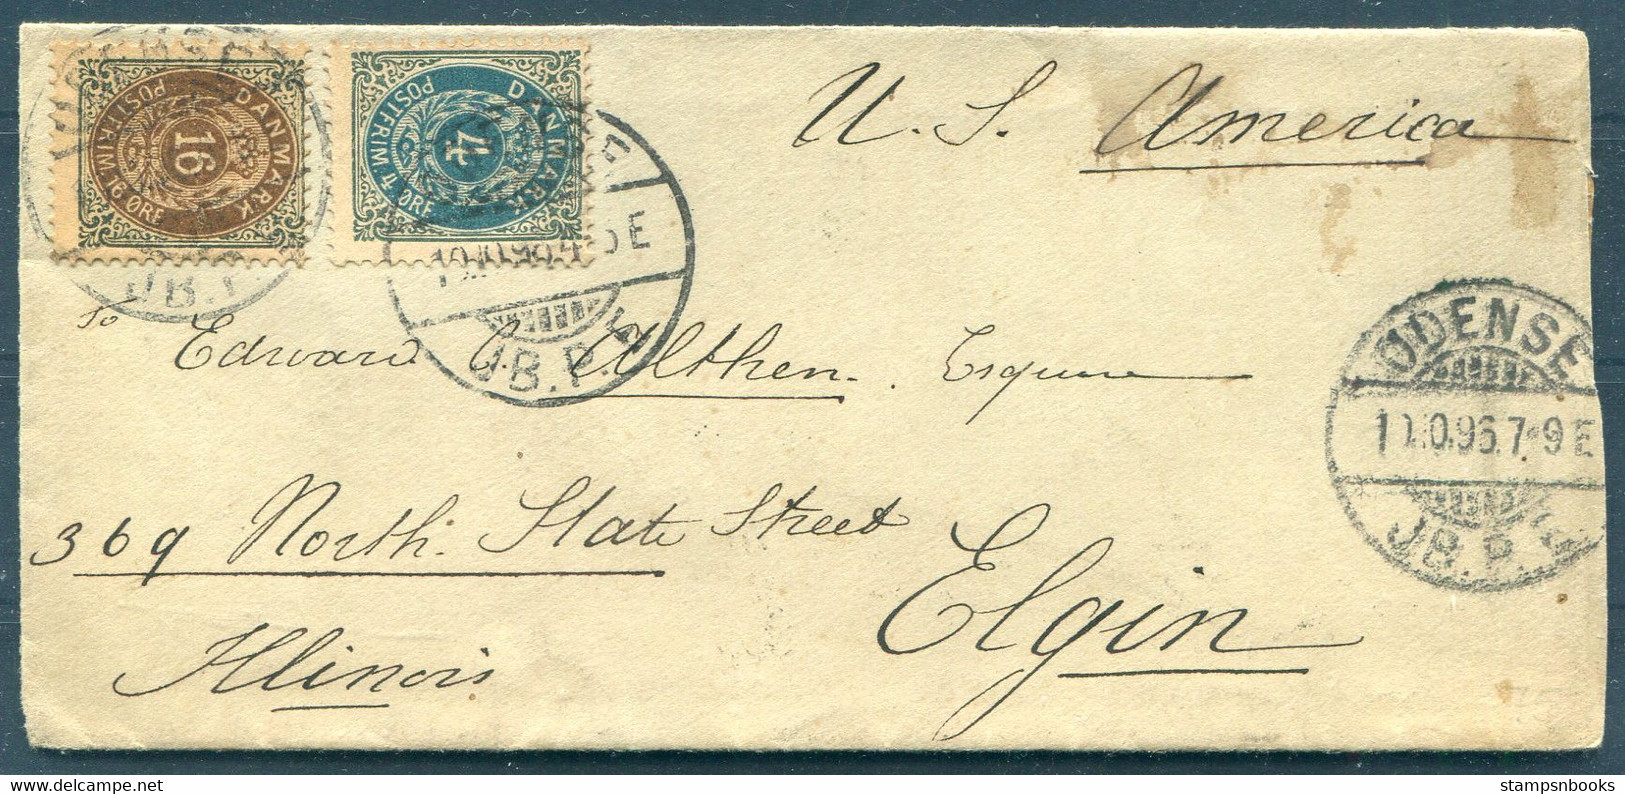 1896 Denmark 20ore Rate (16ore + 4ore) Odense J.B.P.E. Cover - Elgin Illinois USA Via New York. - Briefe U. Dokumente